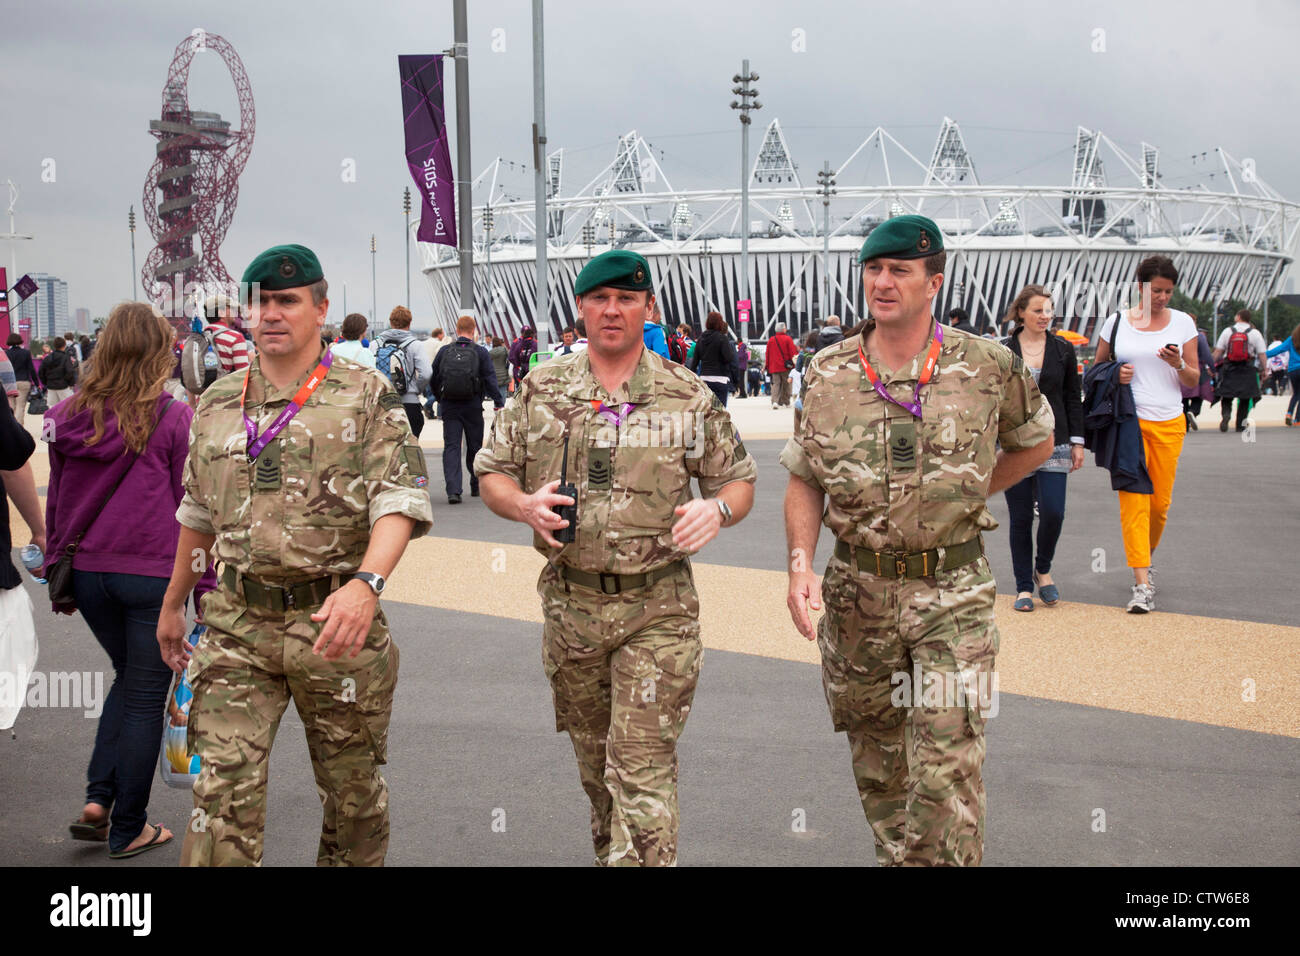 London 2012 Olympic Park in Stratford. Britische Armee im Einsatz, nachdem sie zu holen den Fehlbetrag in Sicherheit gebracht wurden. Stockfoto